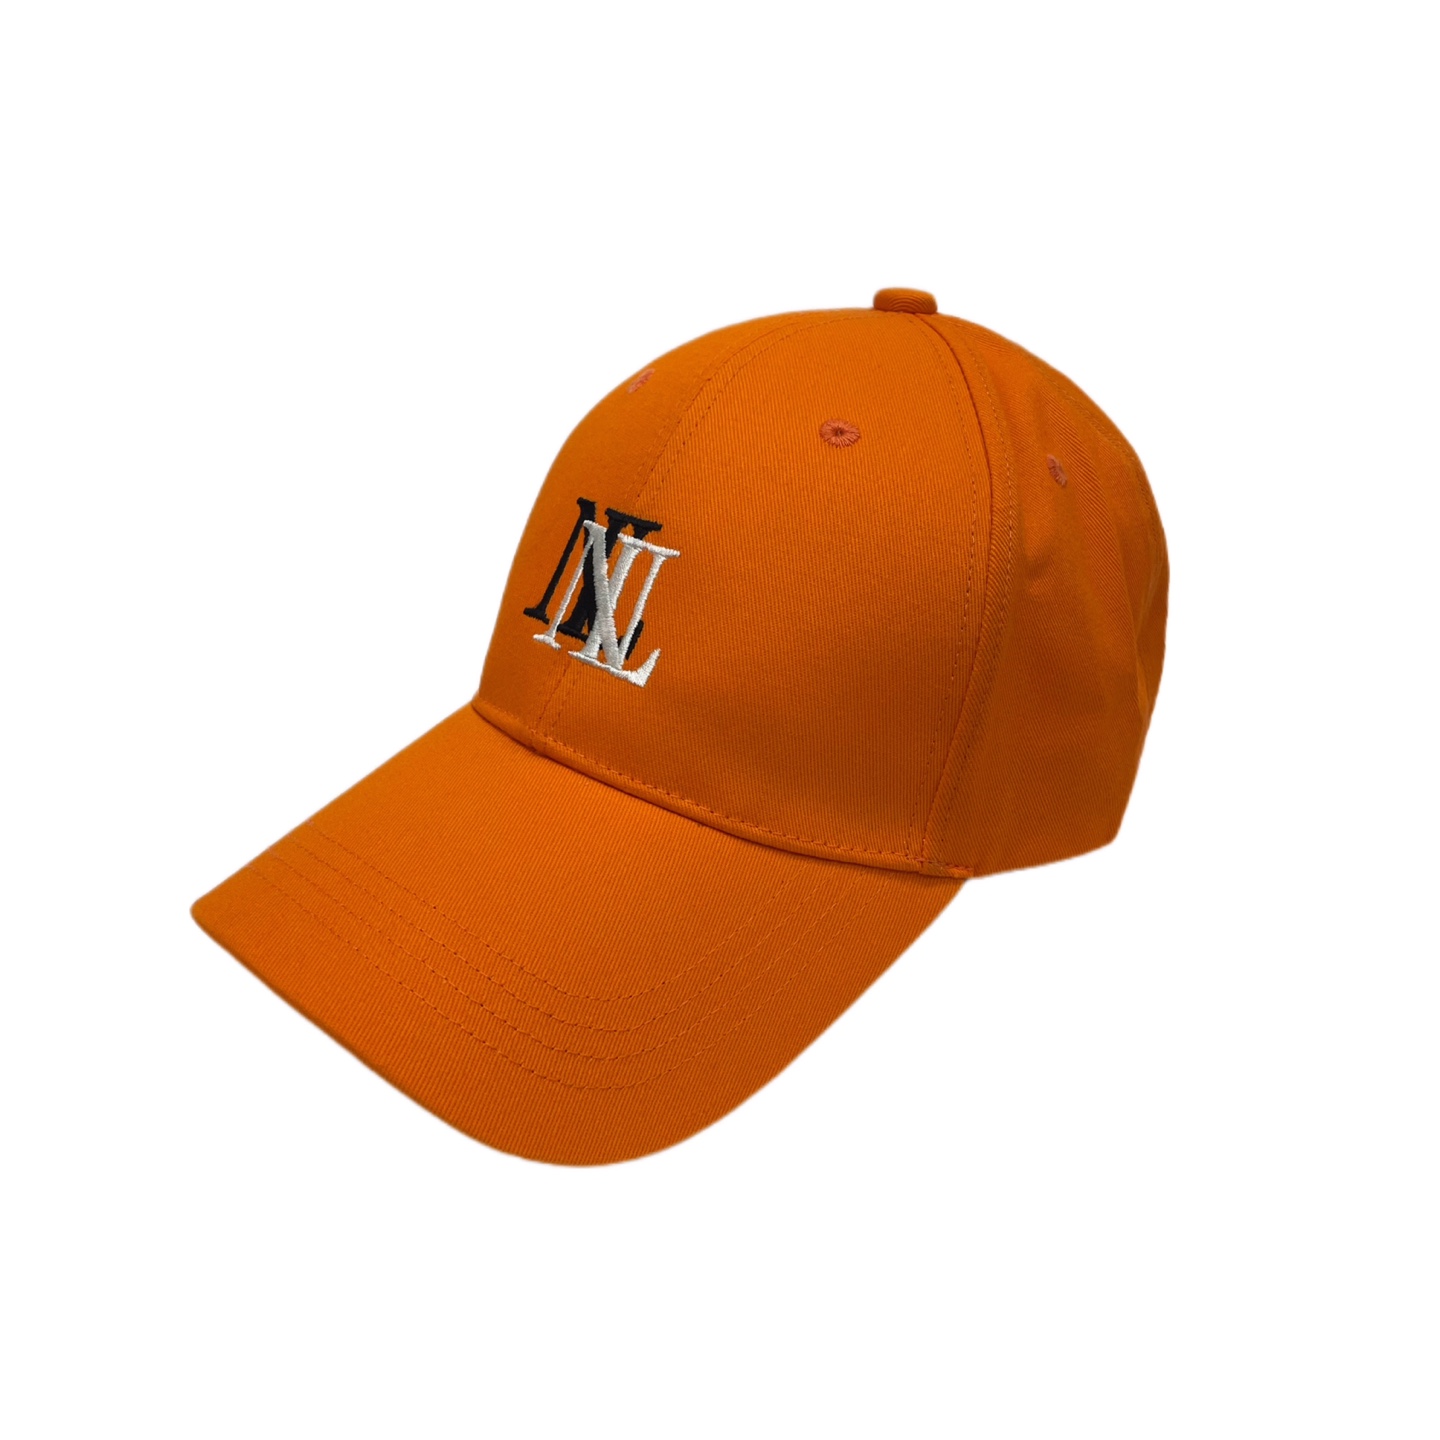 ヌーベルミエール ダブルロゴ オレンジ ベースボールキャップ 帽子